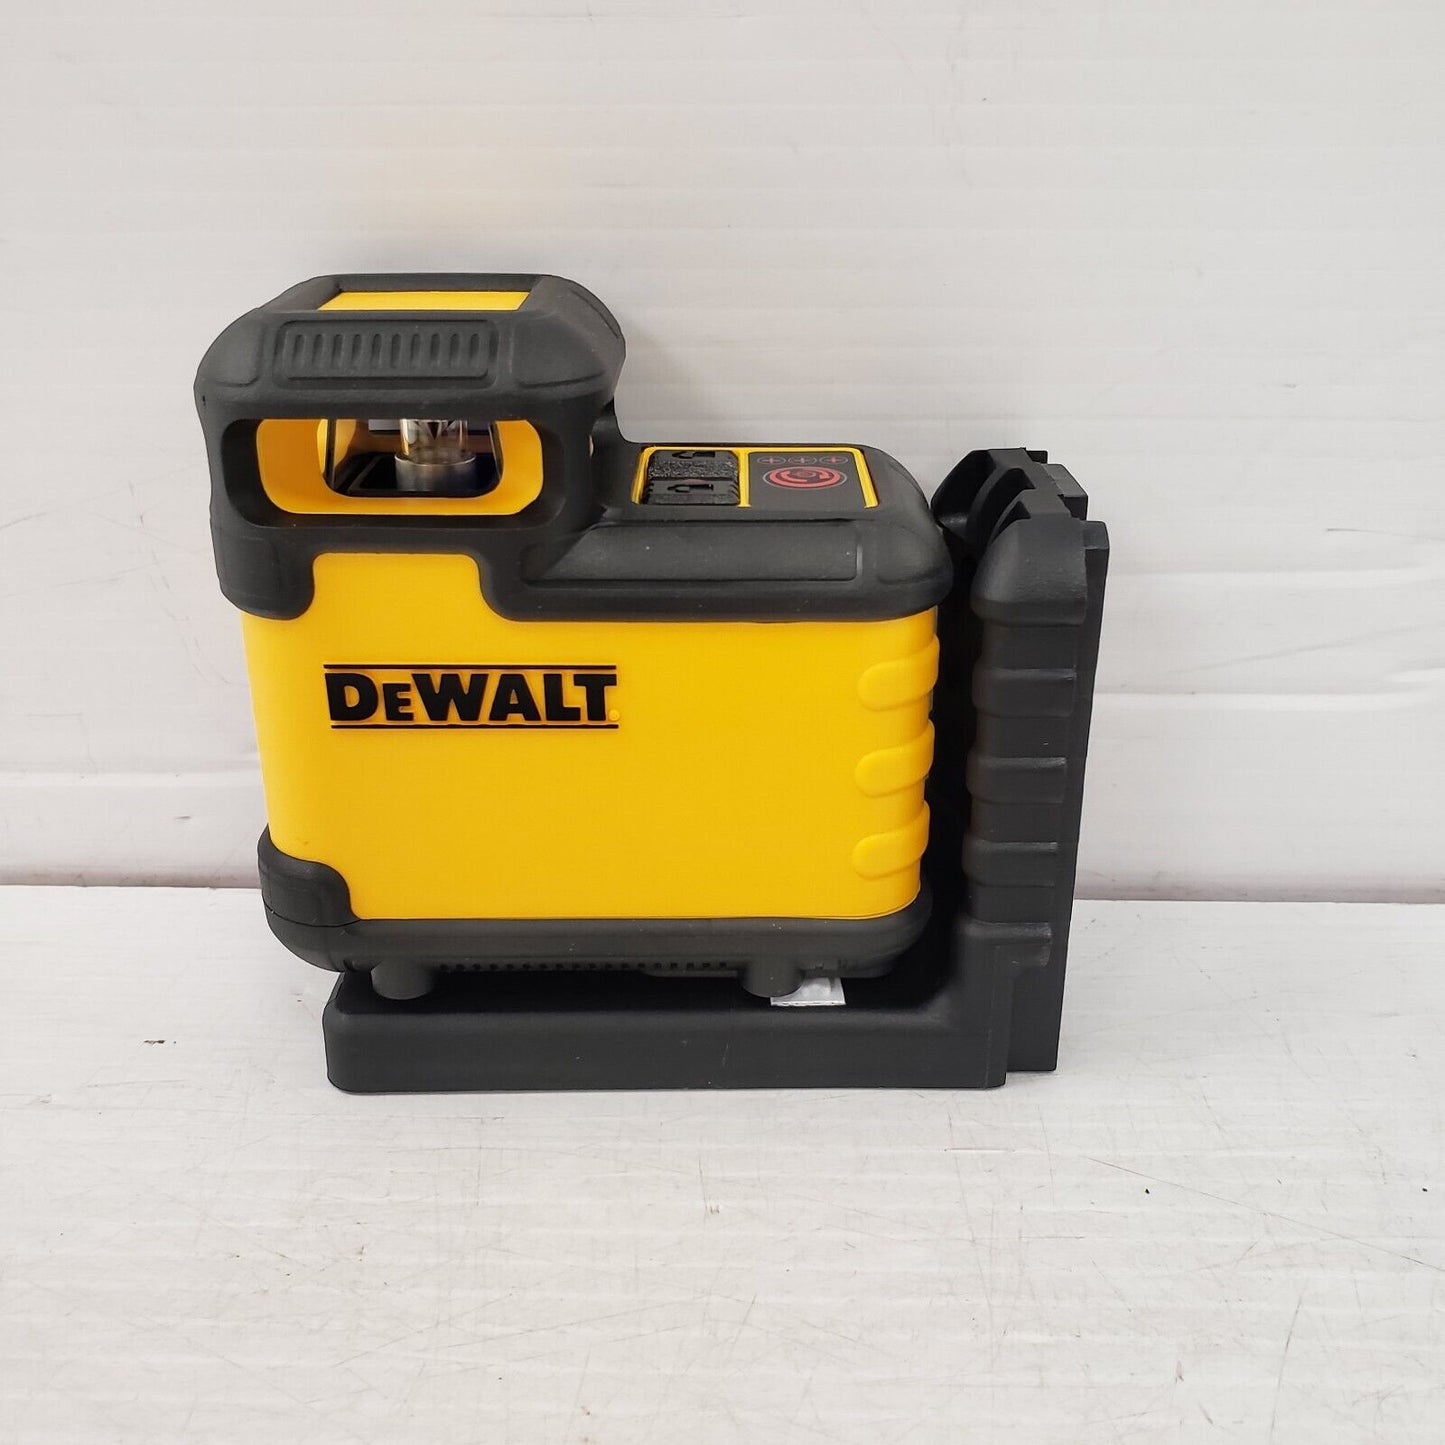 (54260-1) Dewalt DW03601 Laser Level